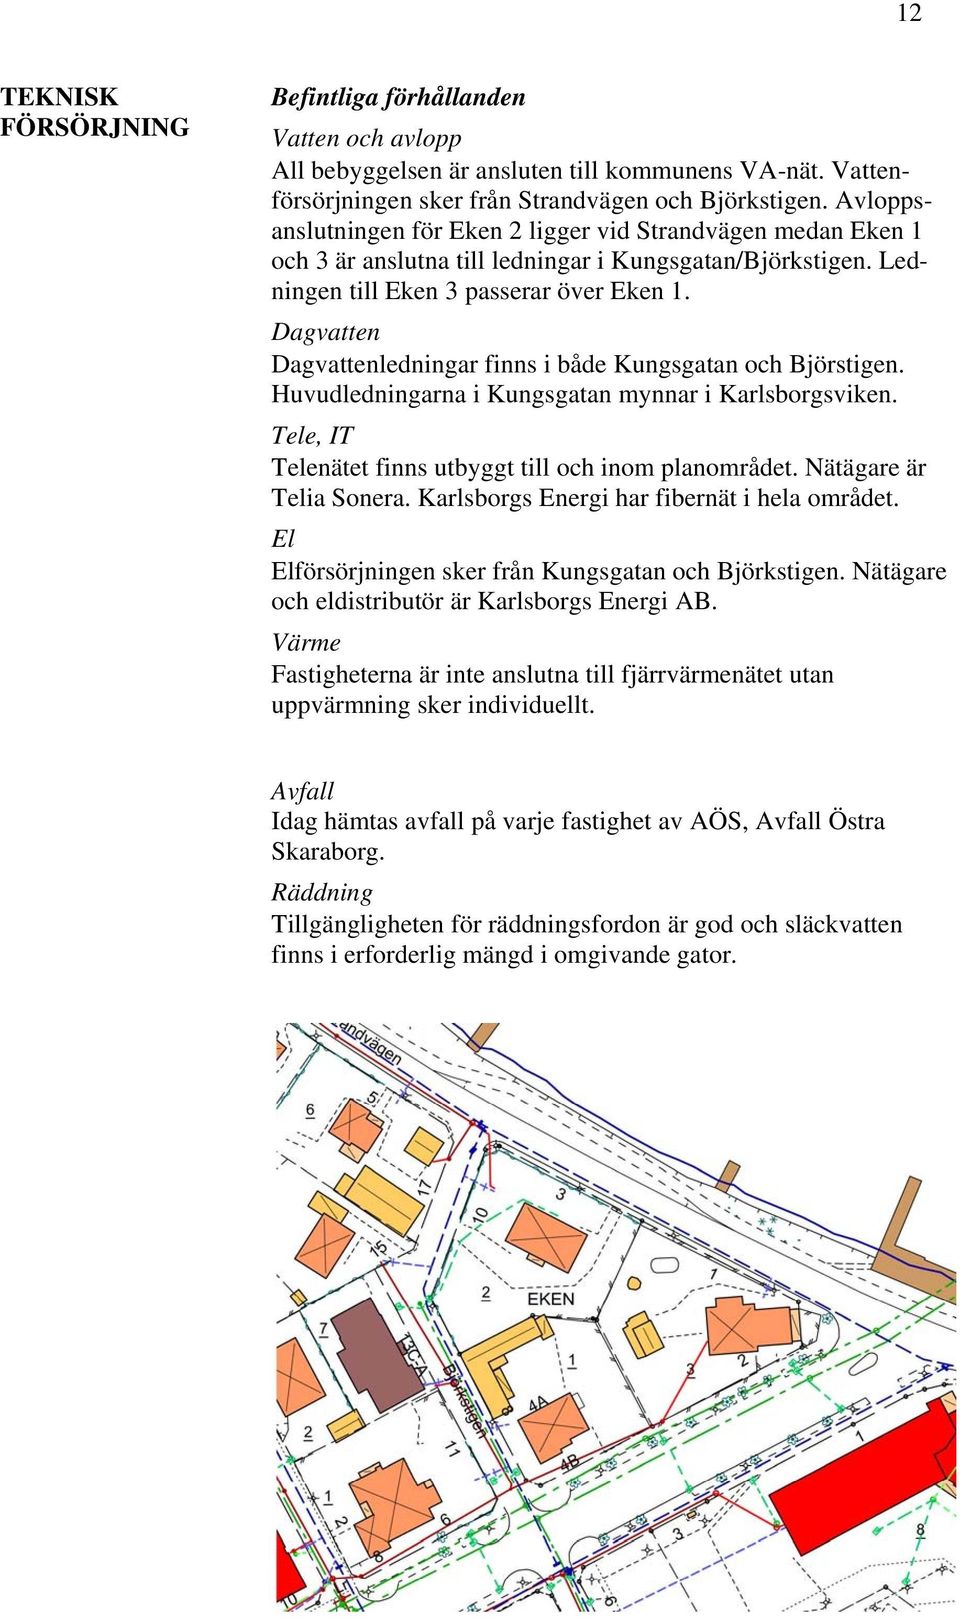 Dagvatten Dagvattenledningar finns i både Kungsgatan och Björstigen. Huvudledningarna i Kungsgatan mynnar i Karlsborgsviken. Tele, IT Telenätet finns utbyggt till och inom planområdet.